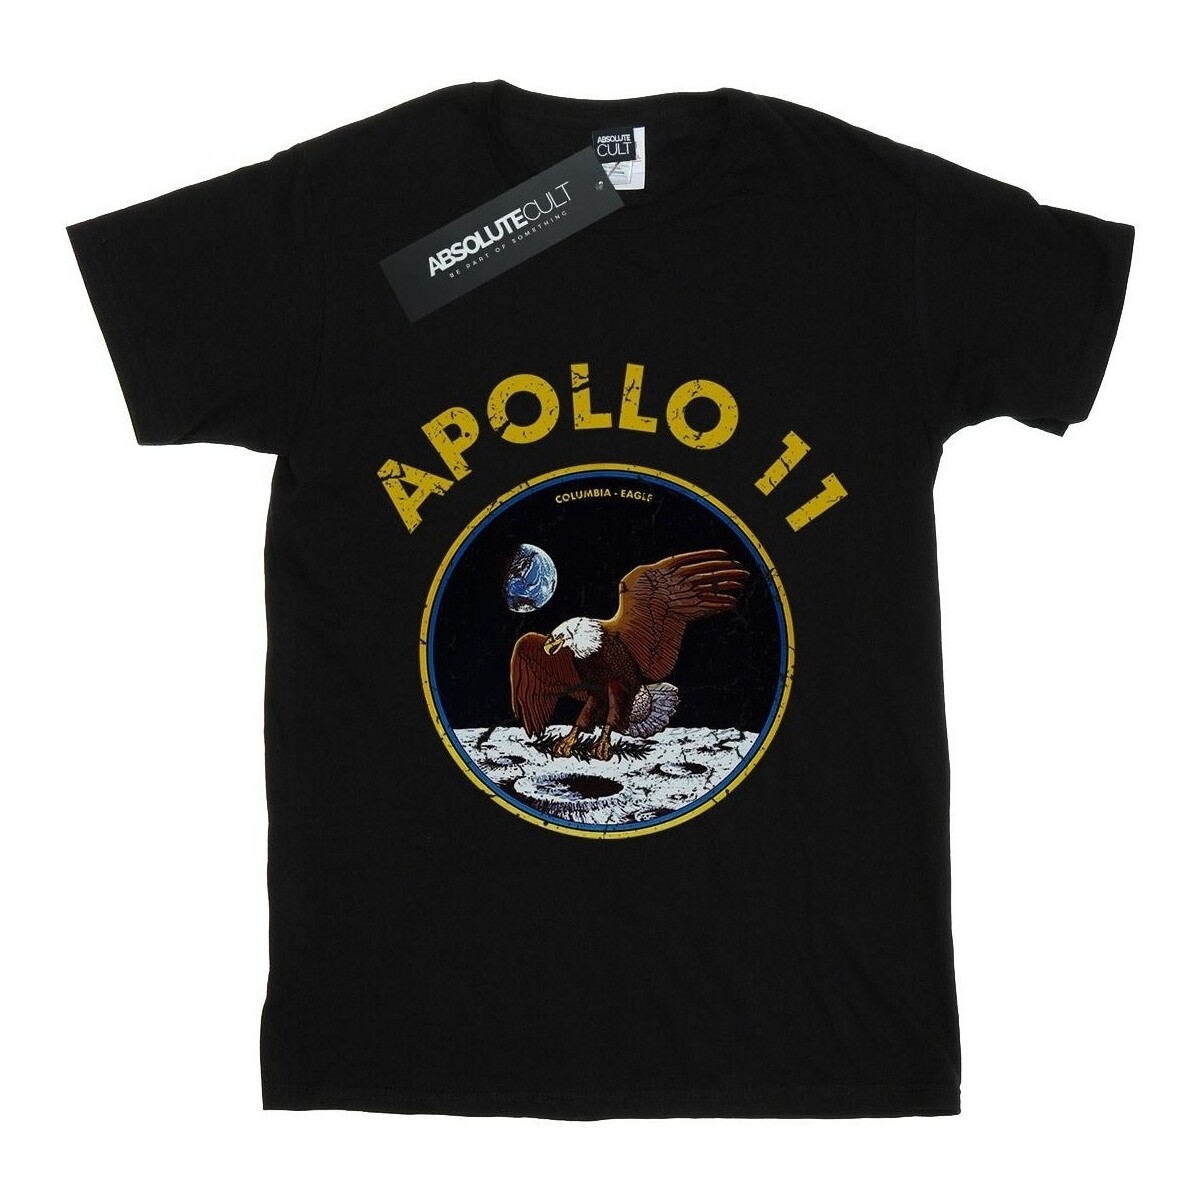 textil Niño Camisetas manga corta Nasa Classic Apollo 11 Negro